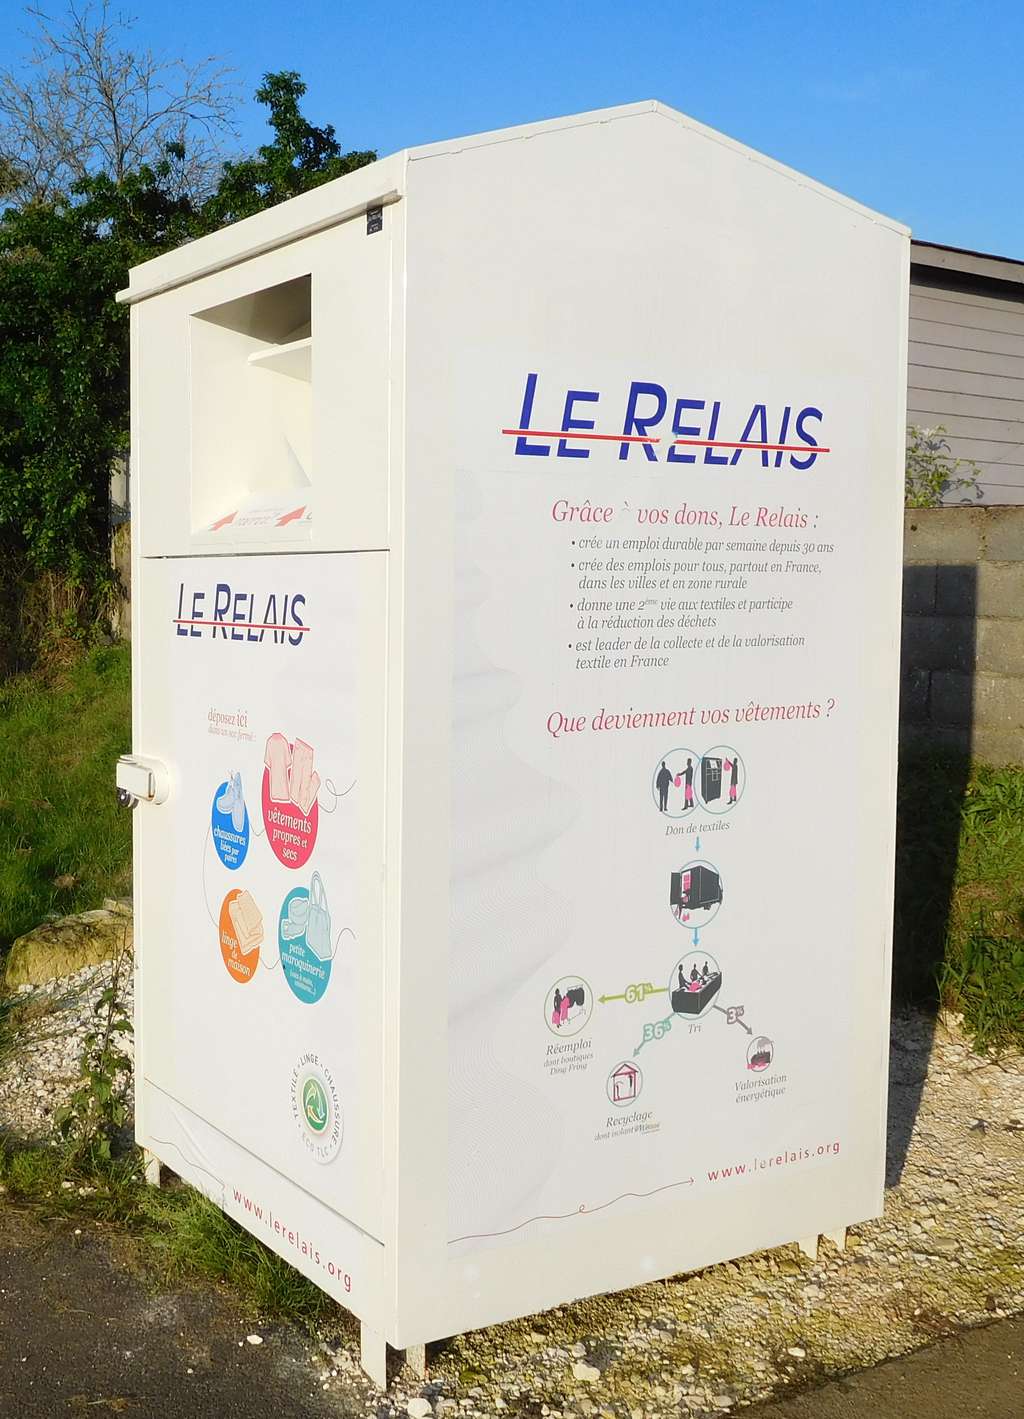 Le Relais est le premier opérateur de tri du textile français en 2022. L'entreprise possède 20 centres de tri sur les 52 situés en France, 3 % des dons qu'elle reçoit sont revendus dans des boutiques françaises selon Pierre Duponchel, le président de l'association Relais. (France Bleu Breizh Izel, 2022). © Cjp24, <em>Wikimedia Commons</em>